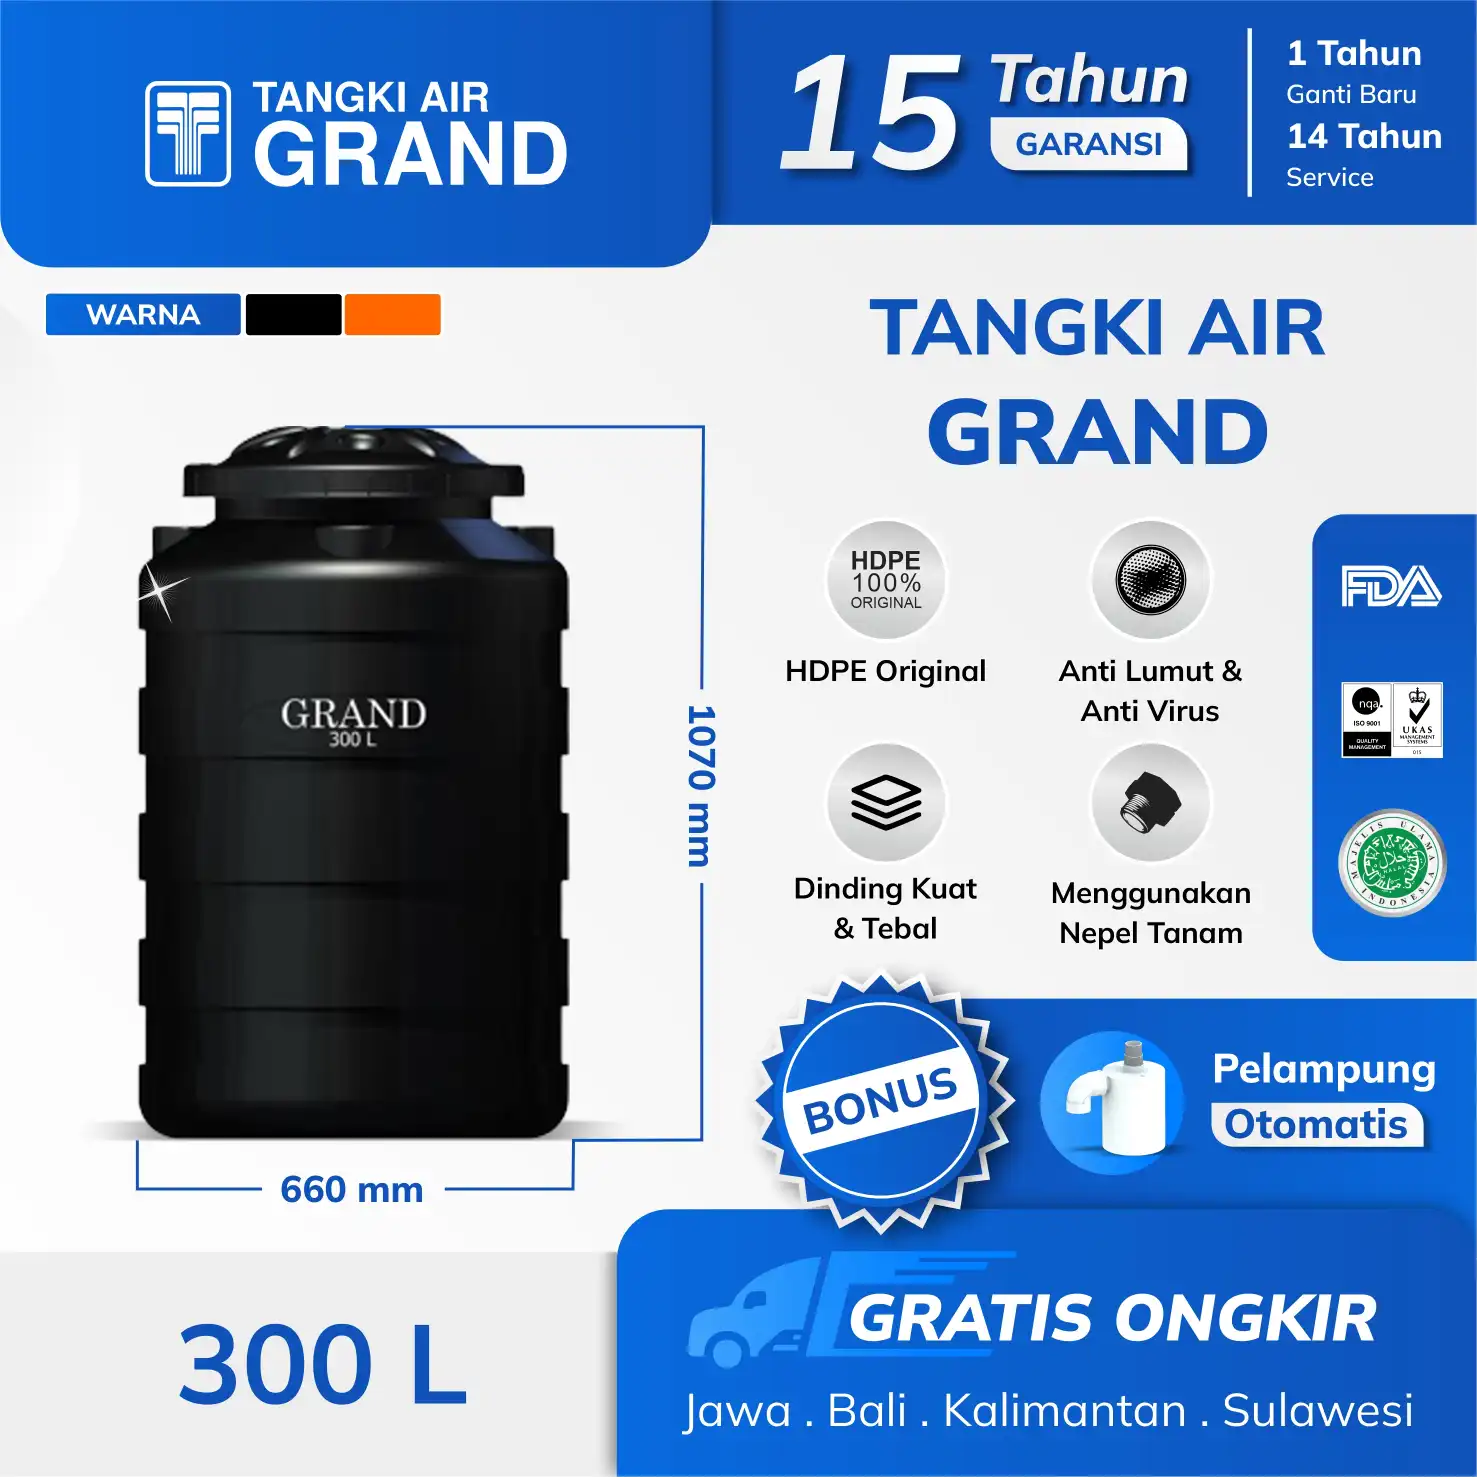 Harga Tangki Air mini 300 liter